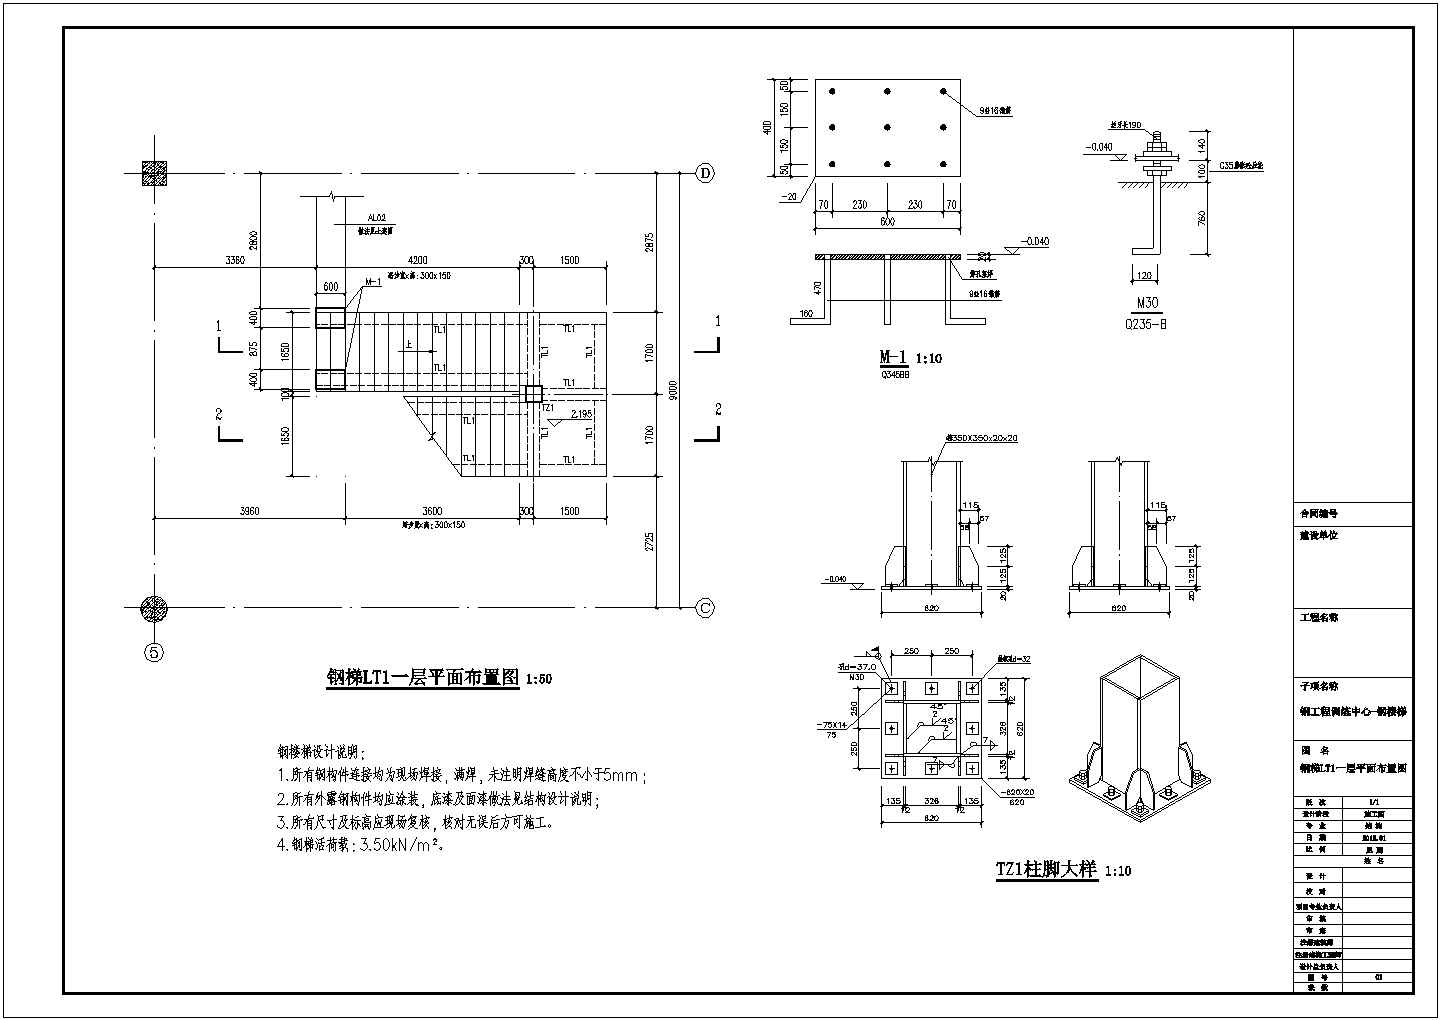 安徽省某地某建筑钢结构部分的设计施工图